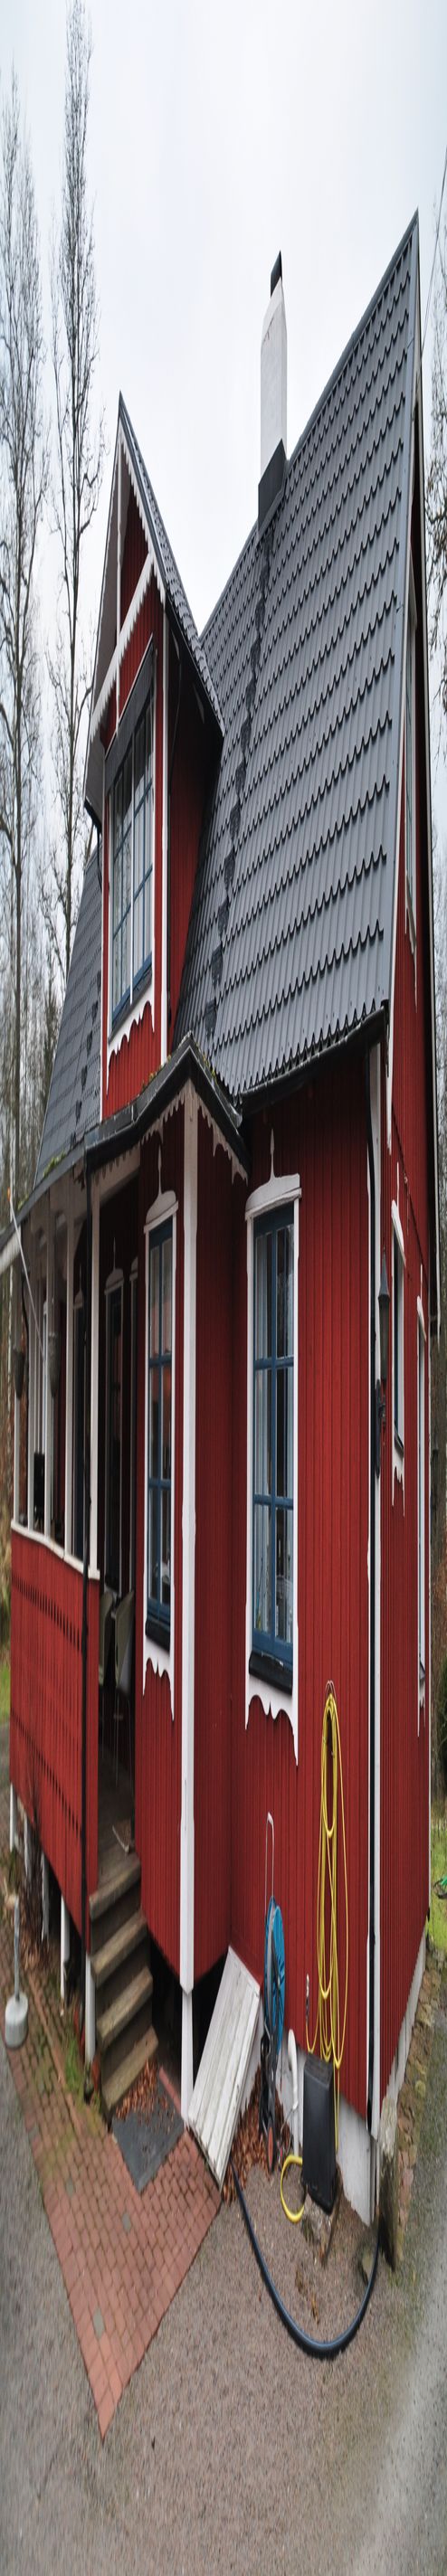 Huse til salg Oversigt | swedenhouse.dk